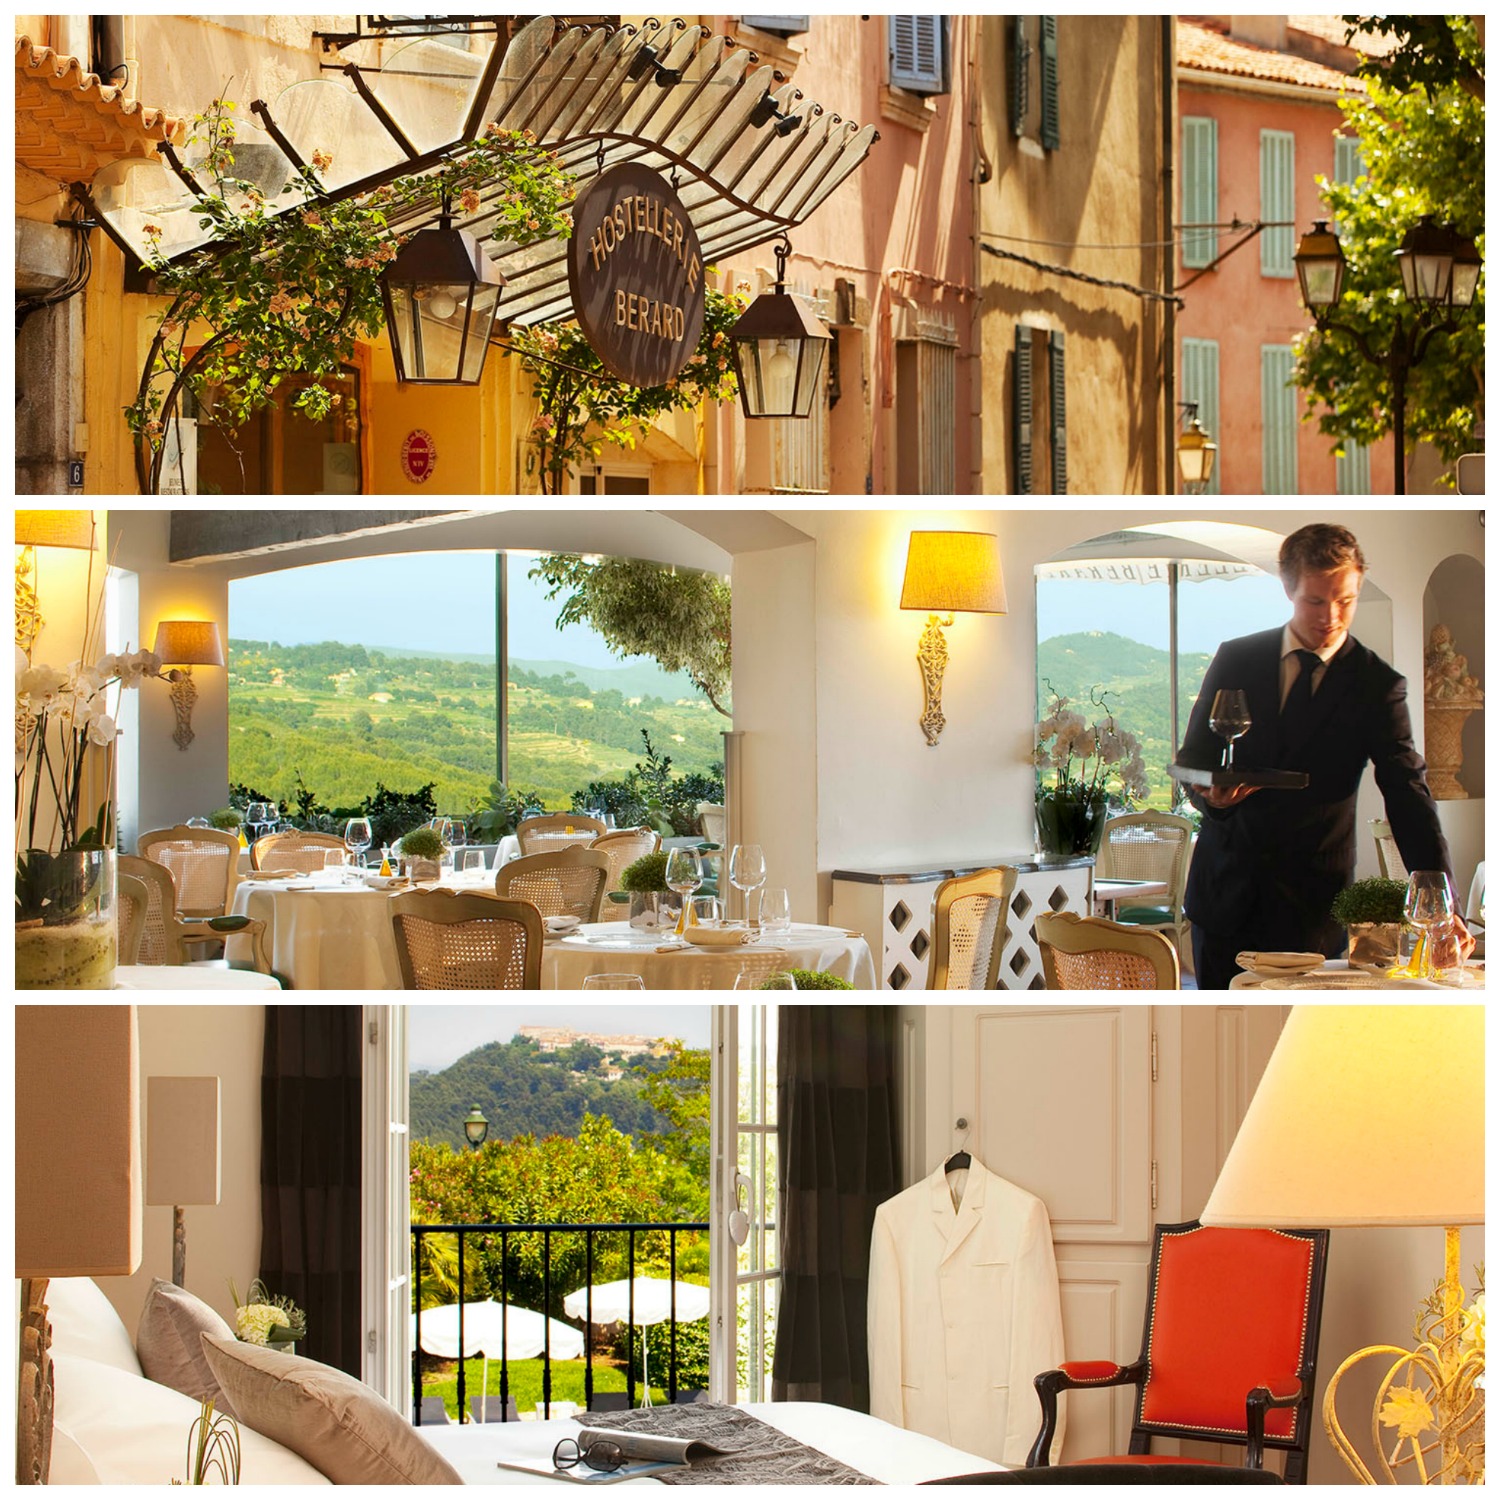 L'Hostellerie Bérard à la Cadière d'Azur, un Hôtel de charme deux restaurants dont un étoilé au Guide Michelin dans le sud de la France sur le blog lifestyle, mode et photo de Michel Gronemberger.